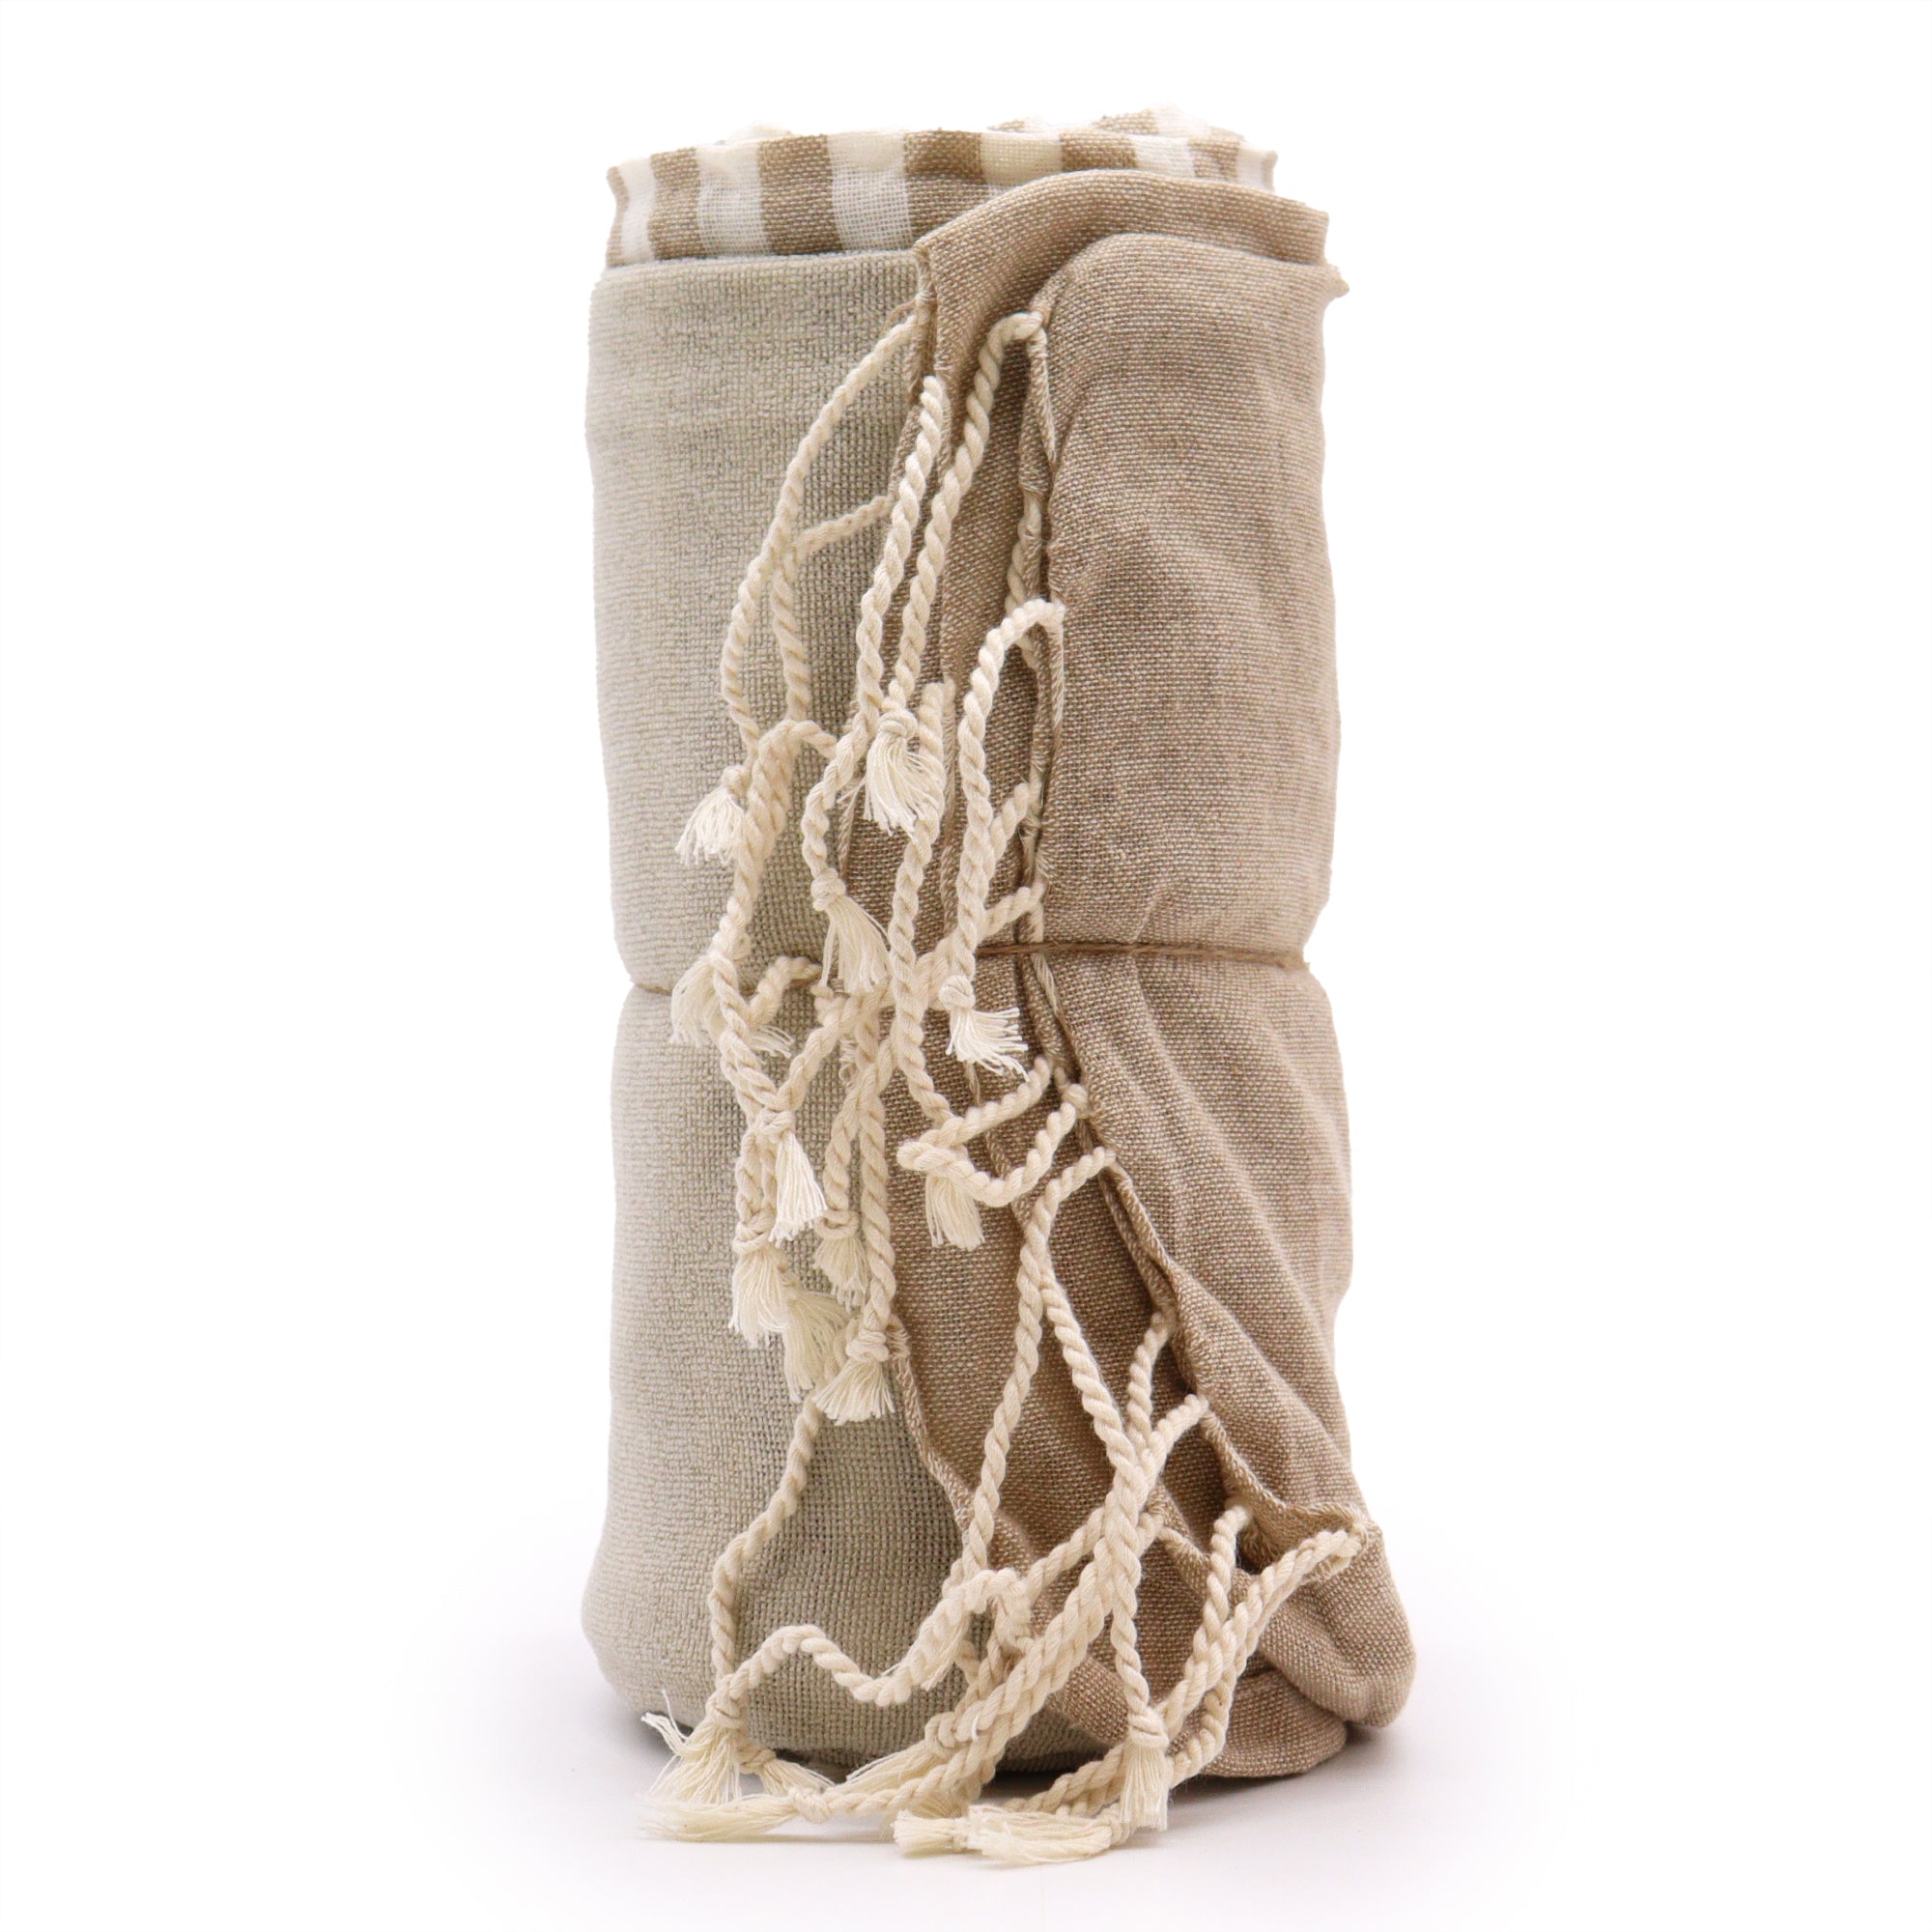 View Cotton Pario Towel 100x180 cm Warm Sand information